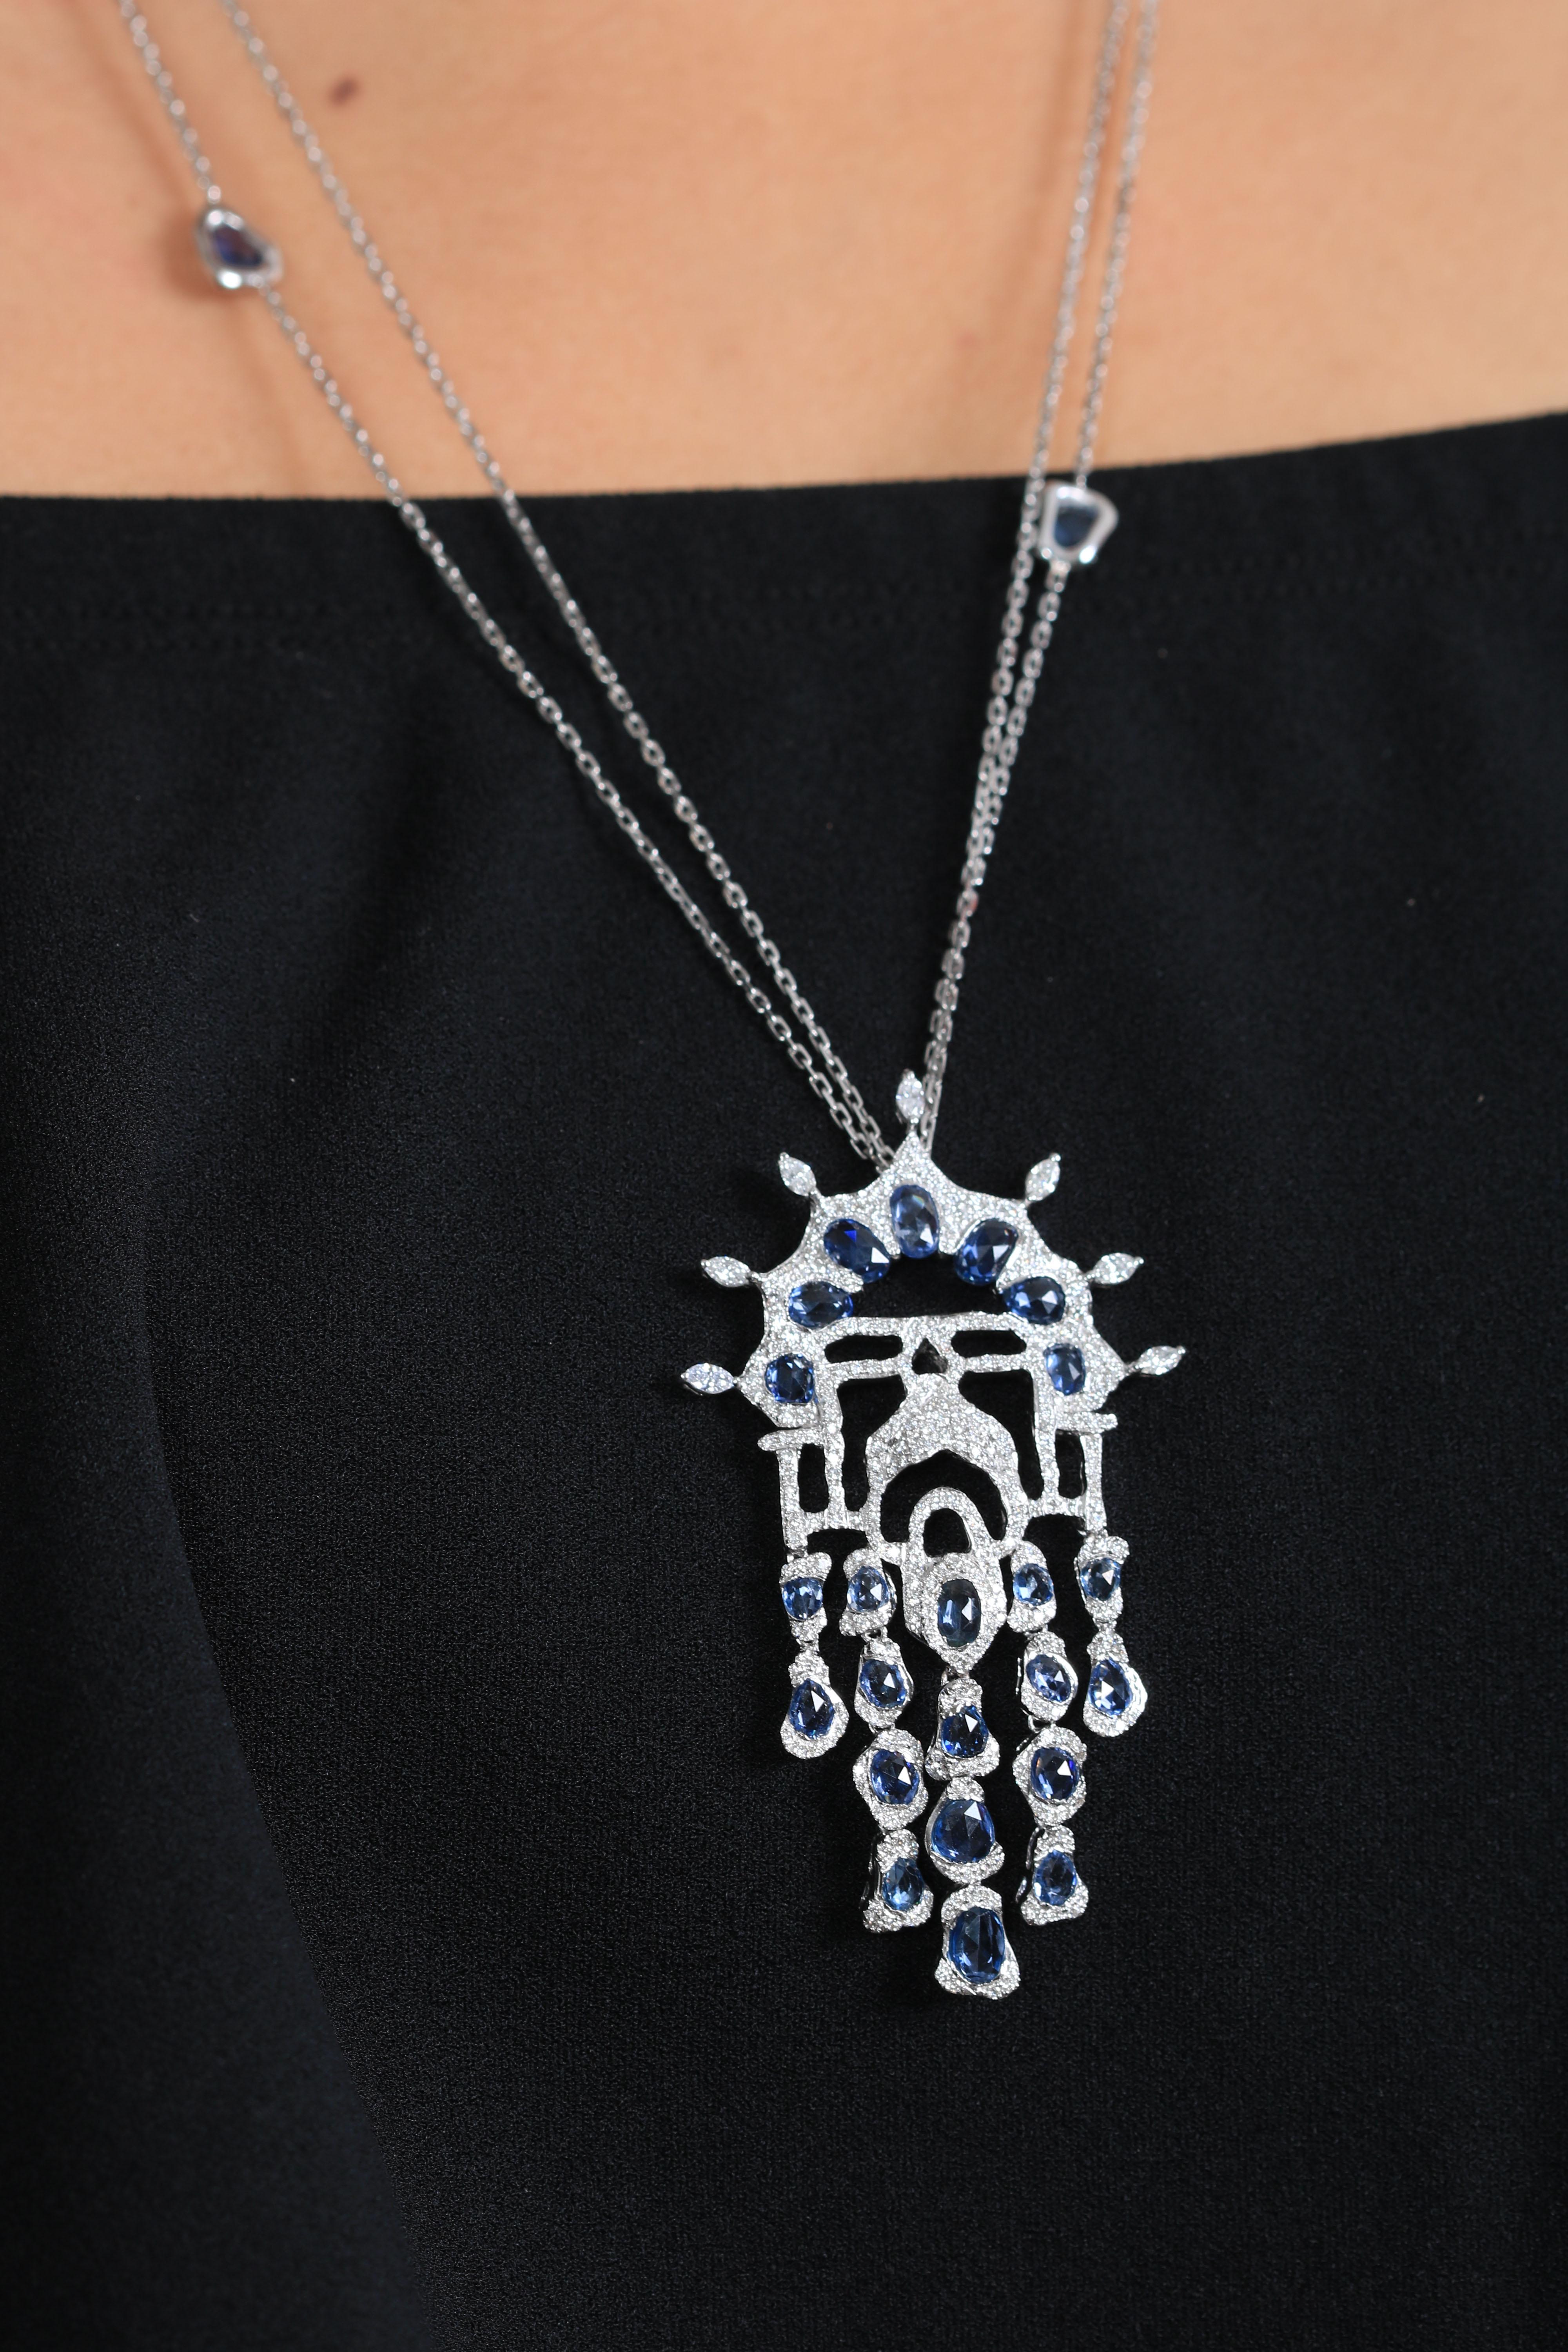 Le pendentif Arabesque est soigneusement fabriqué à la main avec des accents féminins et floraux exquis. Le pendentif est composé de saphirs bleus et de diamants blancs lourdement sertis, dont les différentes coupes et formes se rejoignent pour